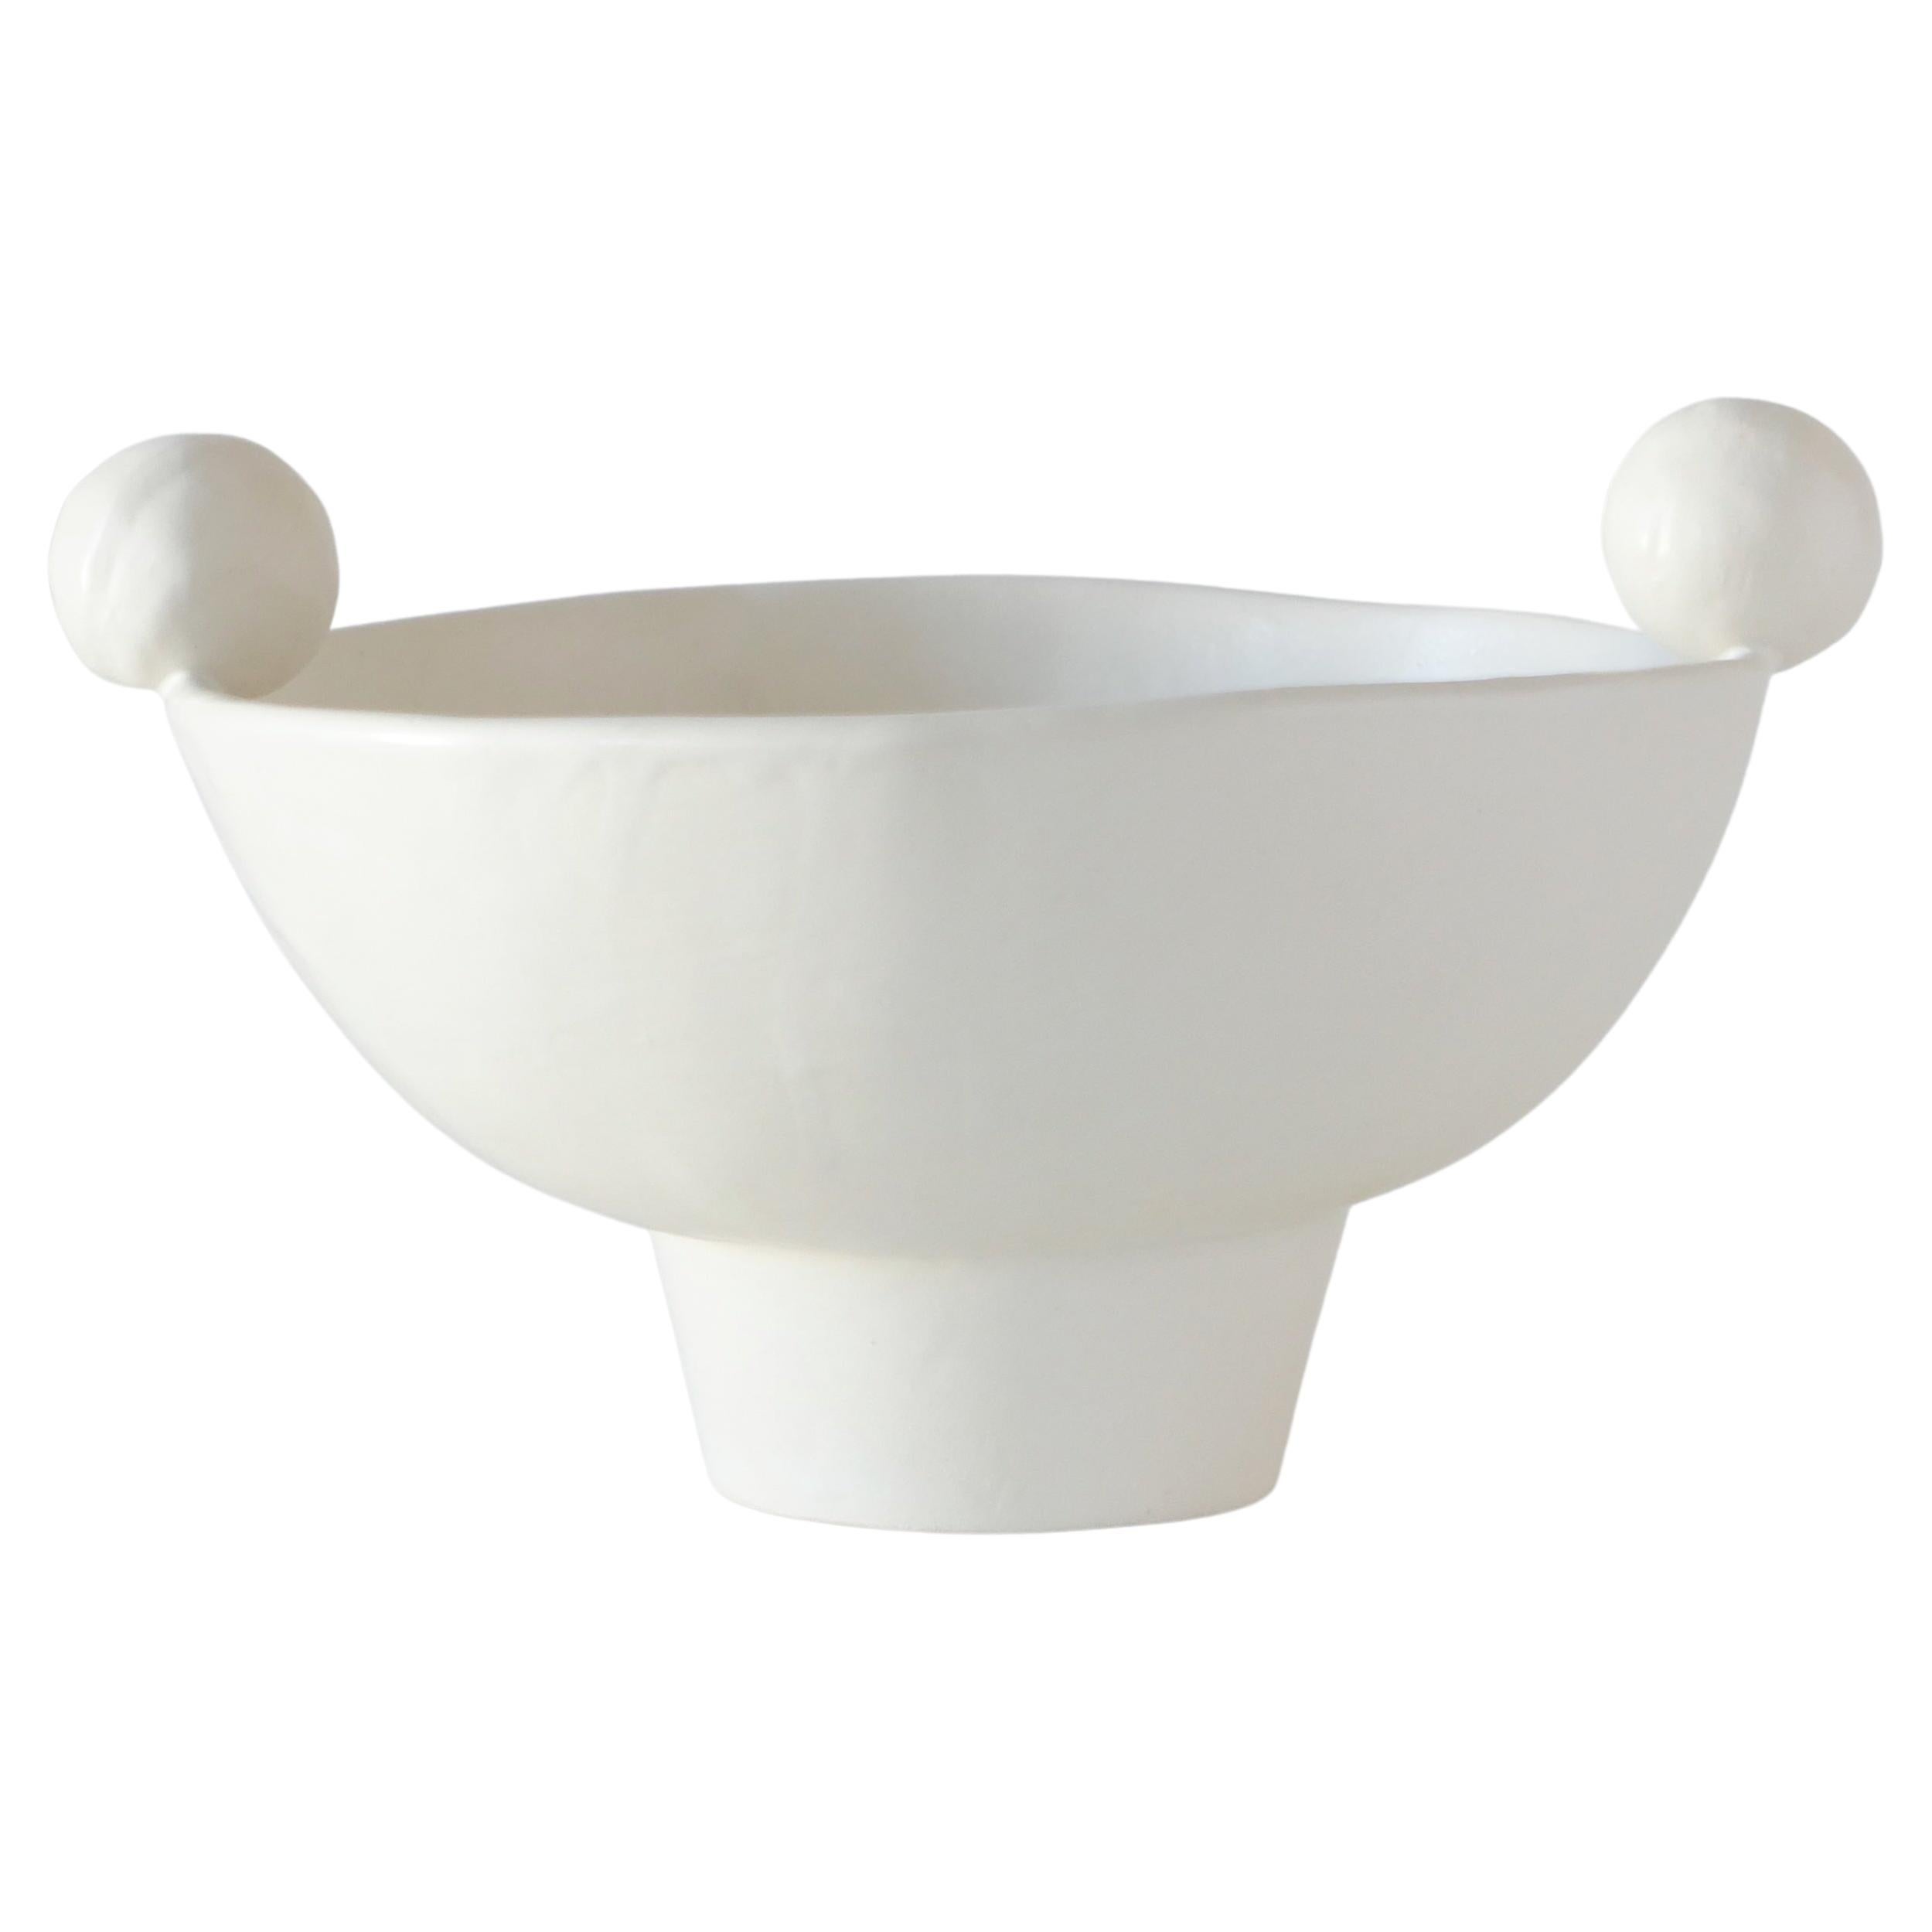 Decorative Contemporary Footed Handmade Ceramic Bowl